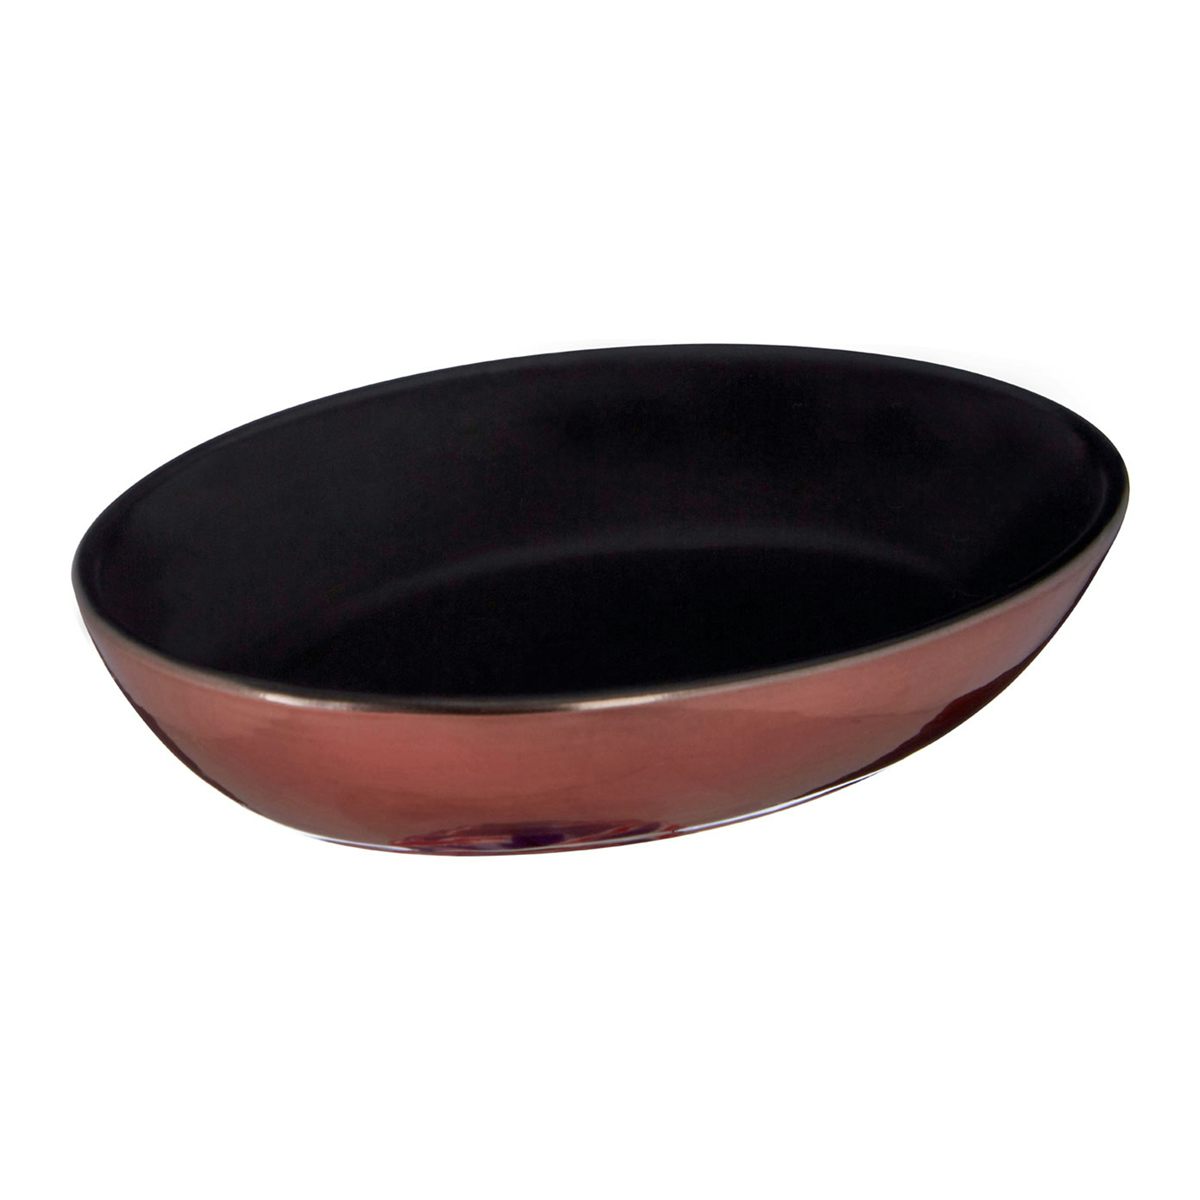 Accents Alpha stoneware black and copper soap dish